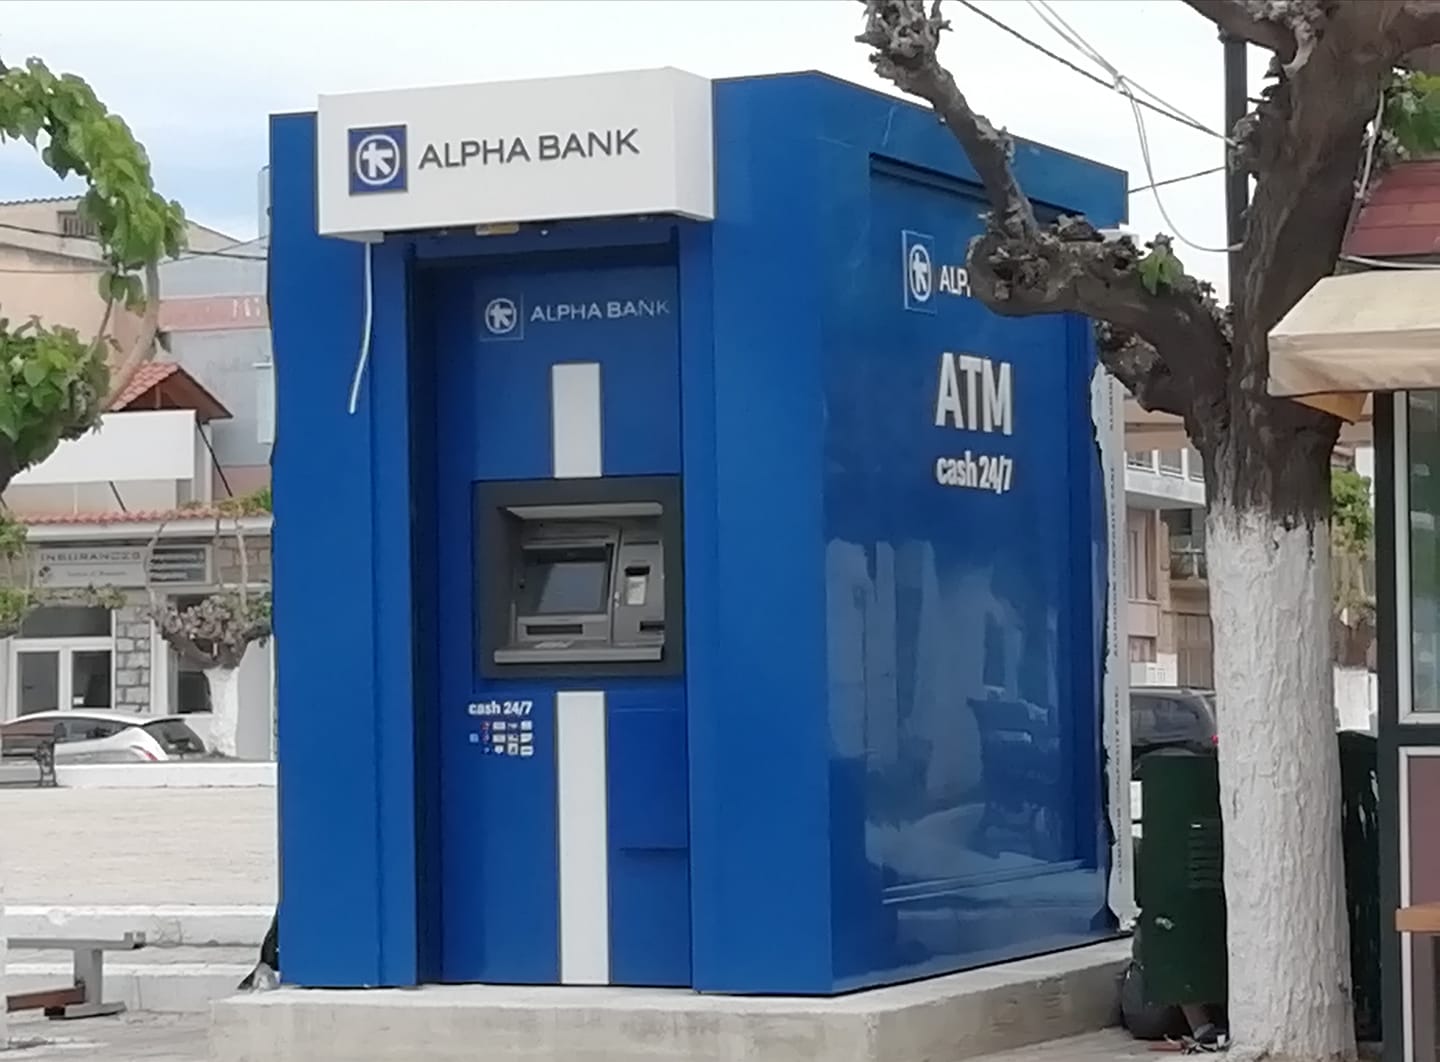 Αμάρυνθος: Εγκαταστάθηκε το ΑΤΜ της Alpha Bank στην πλατεία και σύντομα θα λειτουργήσει